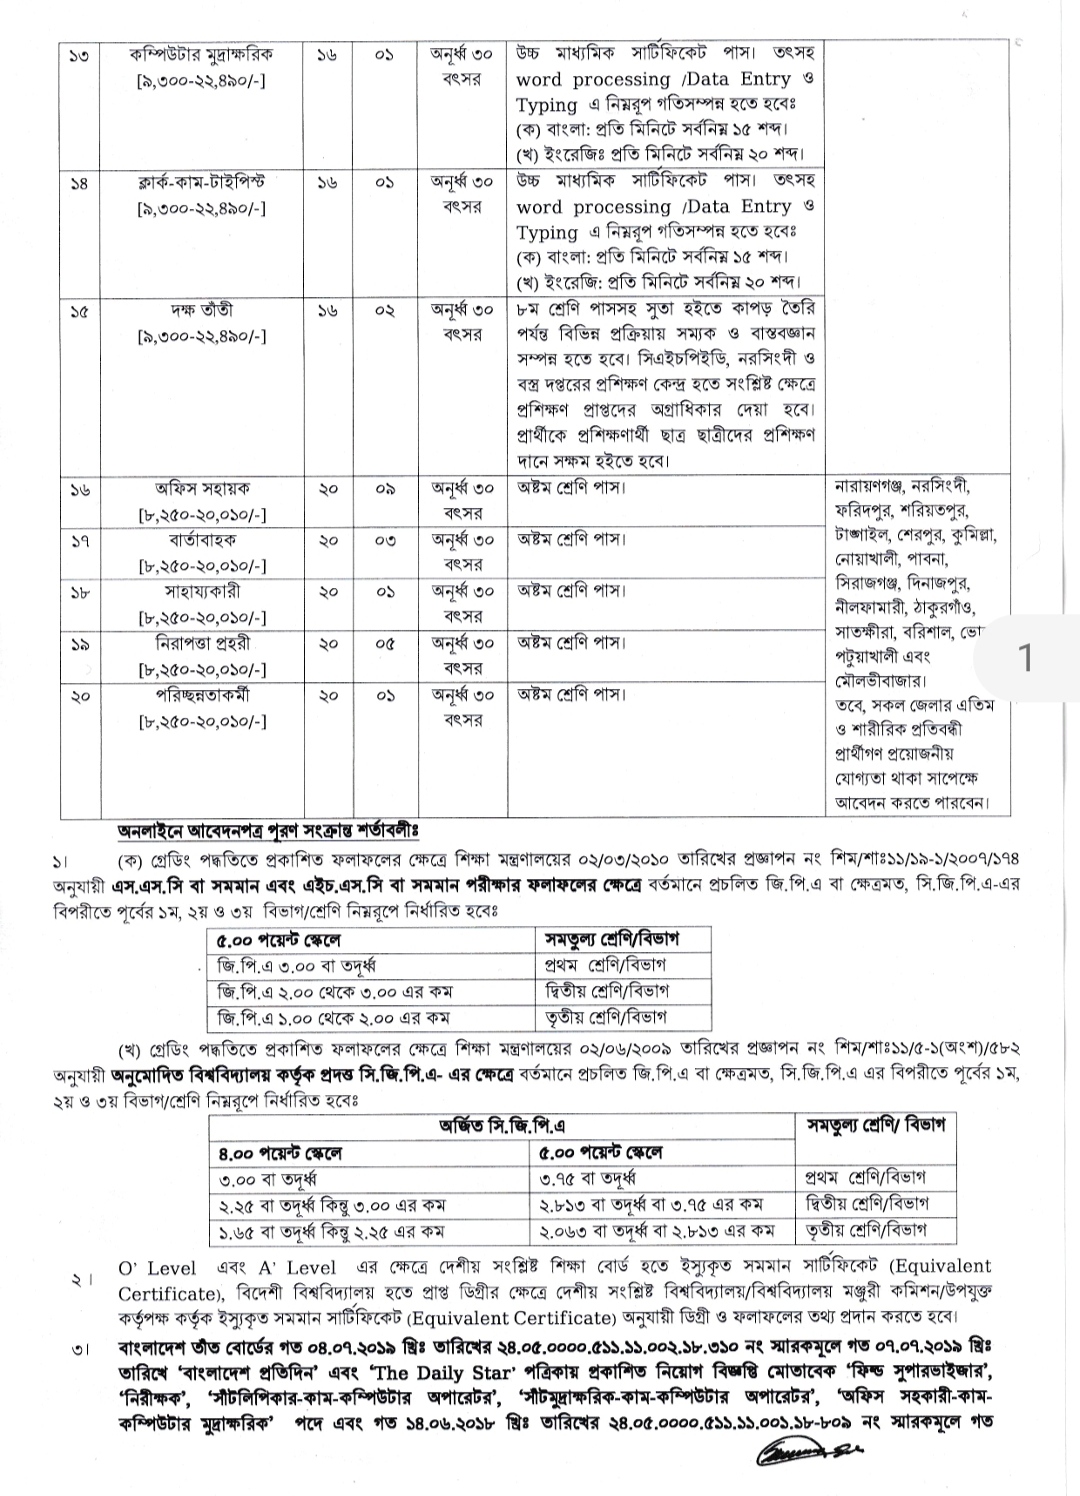 Bangladesh Handloom Board Job